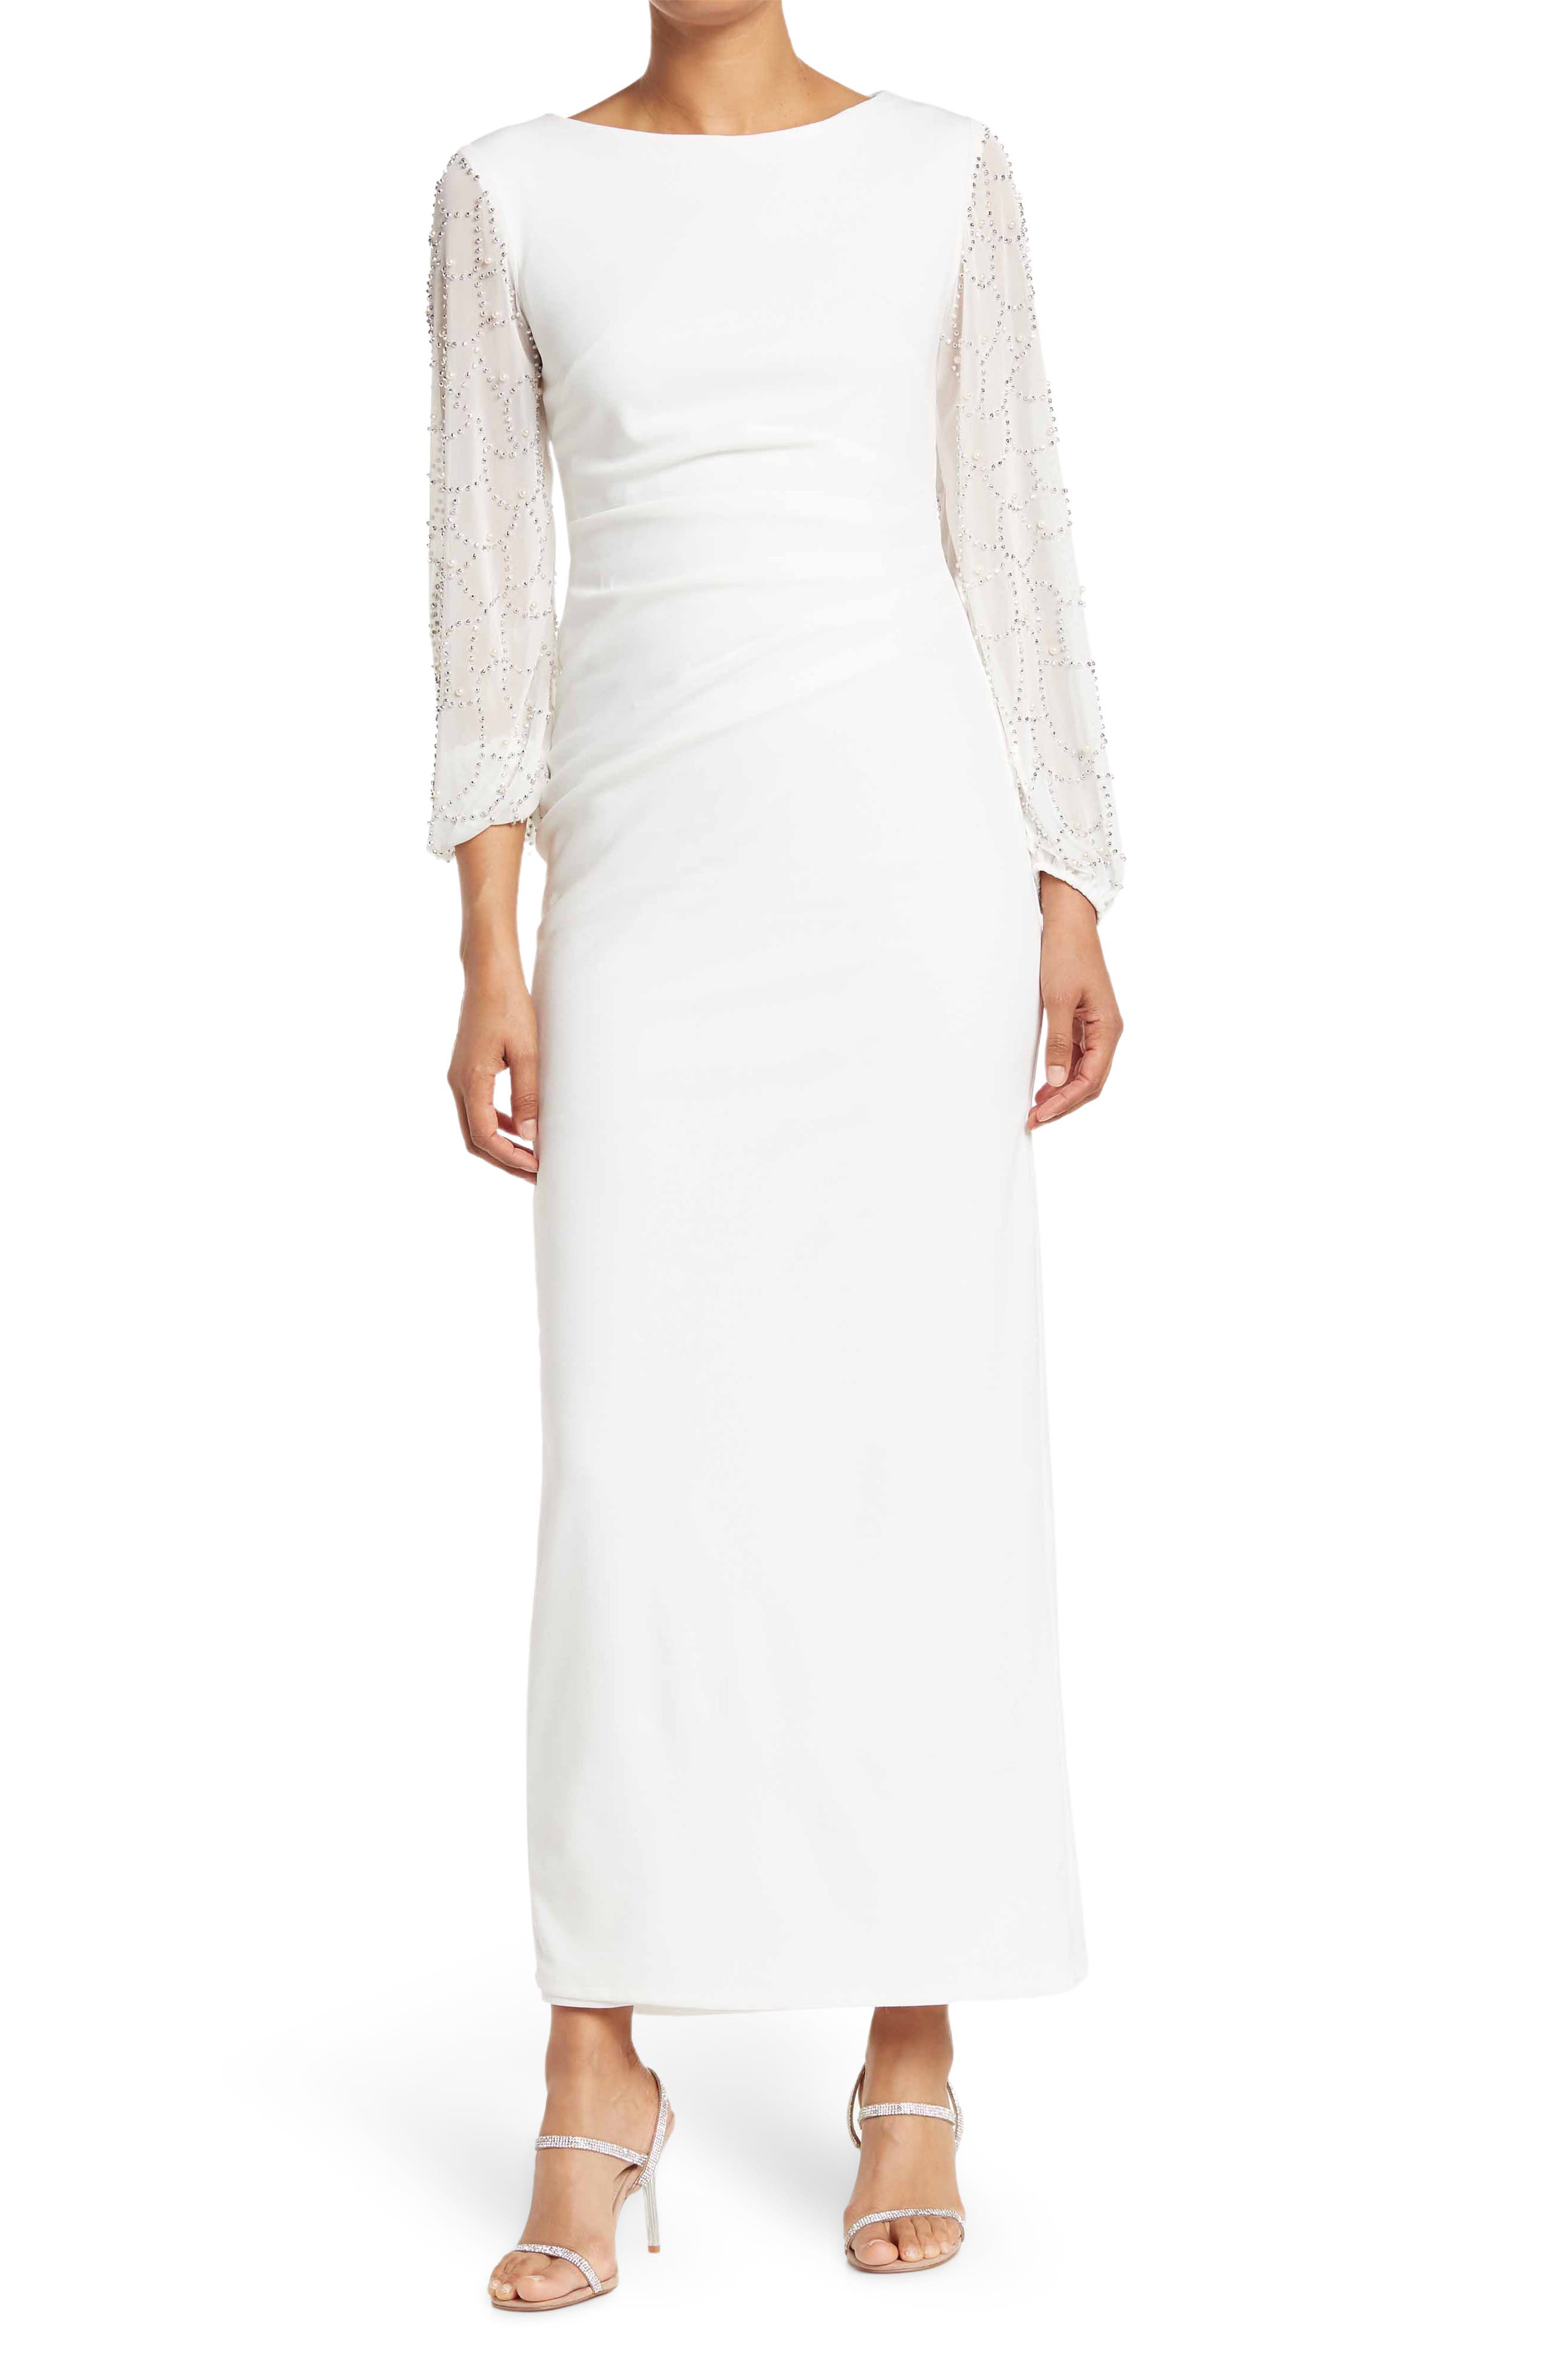 White Long Sleeve Dresses for Women ...